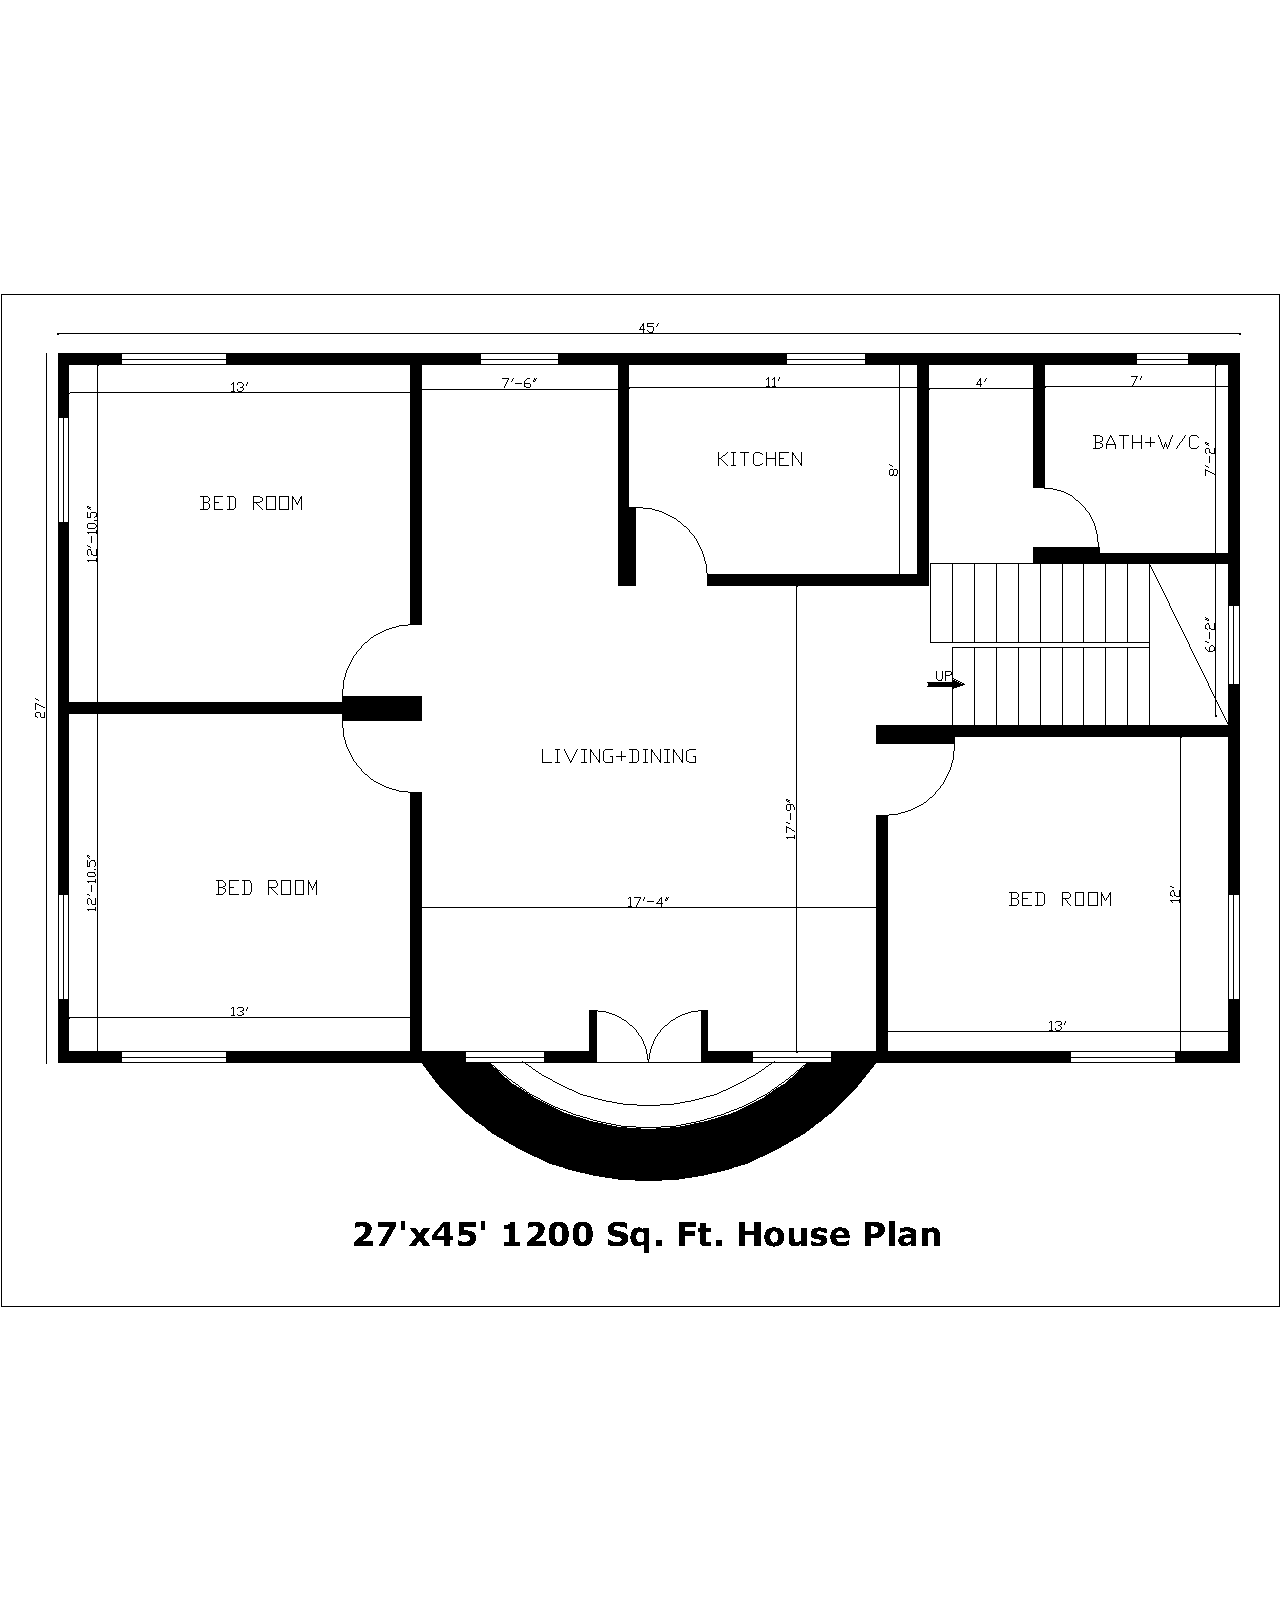 27'x45' 1200 Sq. Ft.House Plan